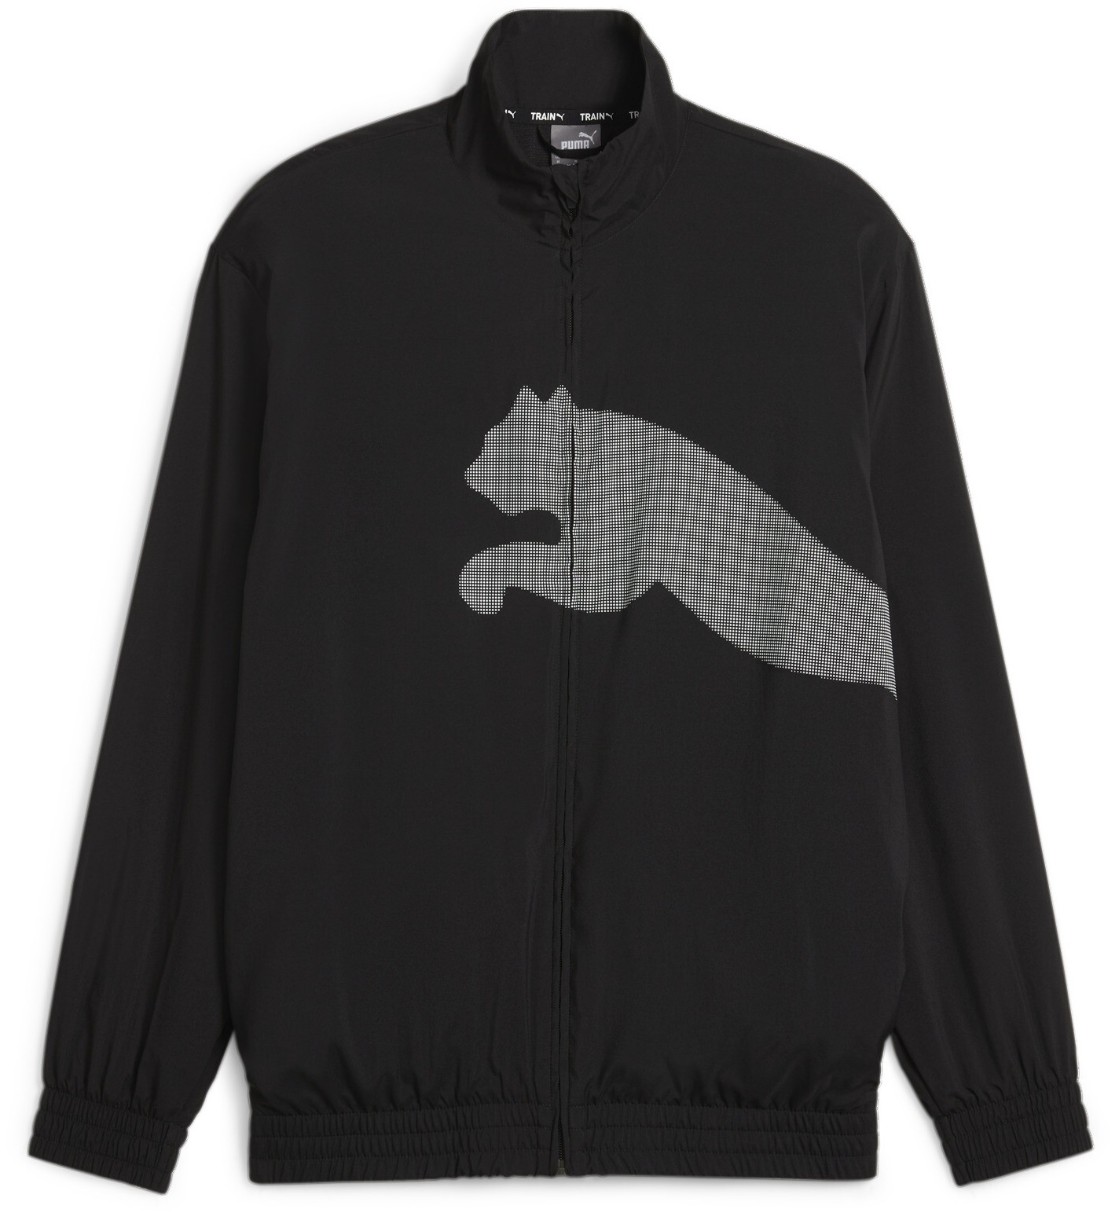 Jachetă pentru bărbați Puma Train Big Cat Woven Fz Jacket Puma Black S